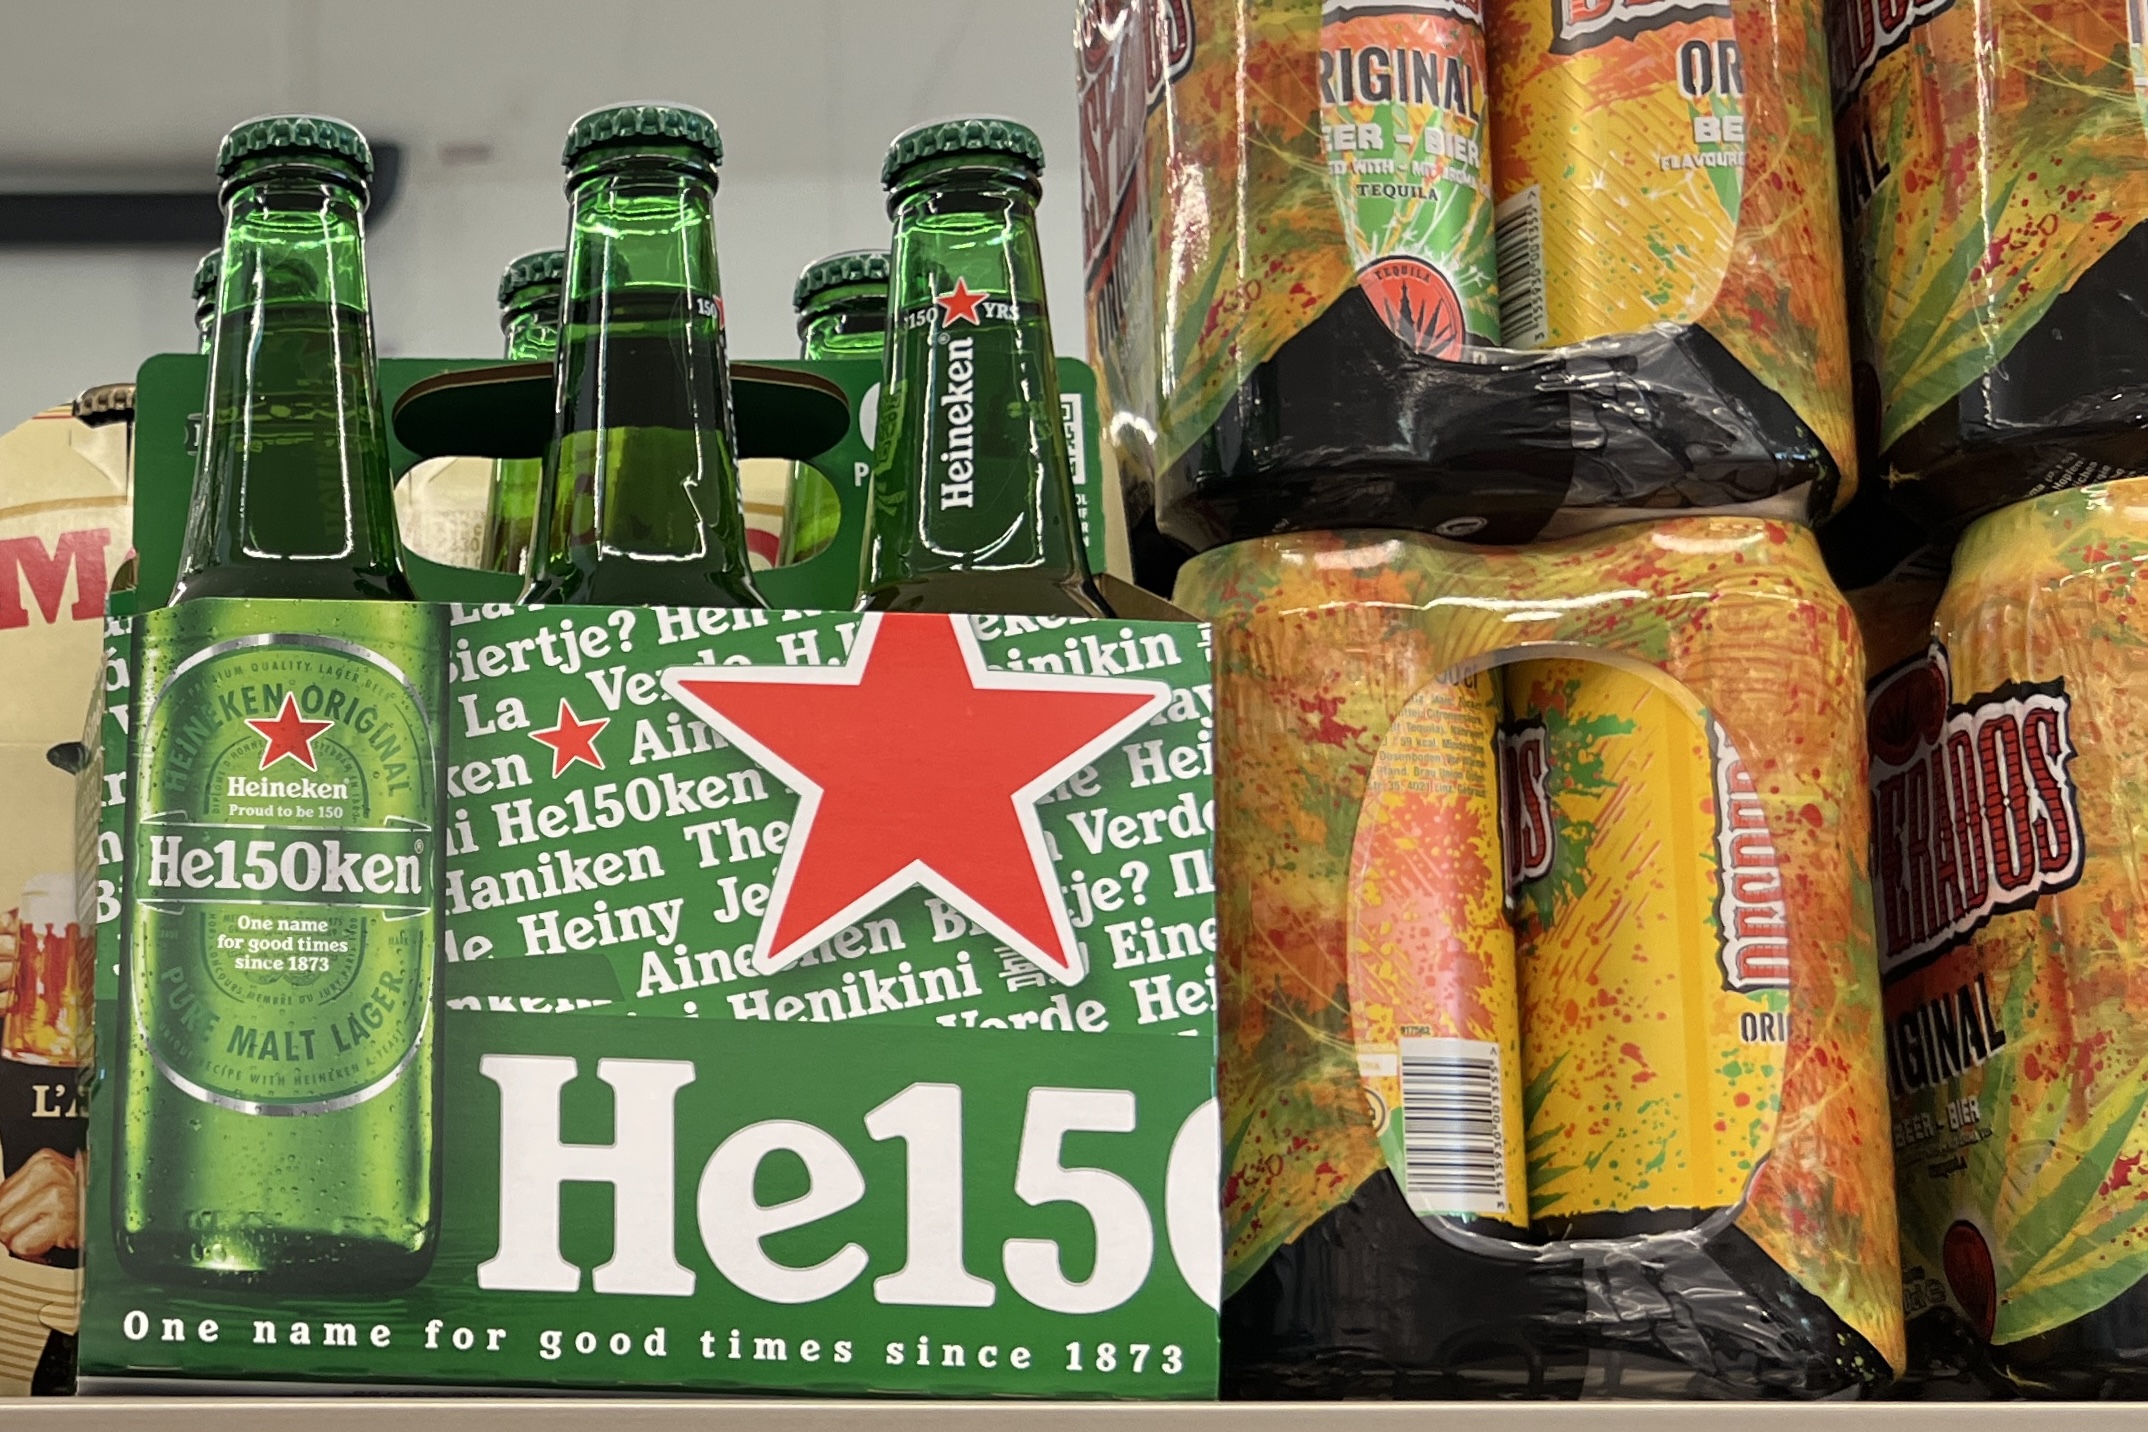 Verpakking Heineken 150